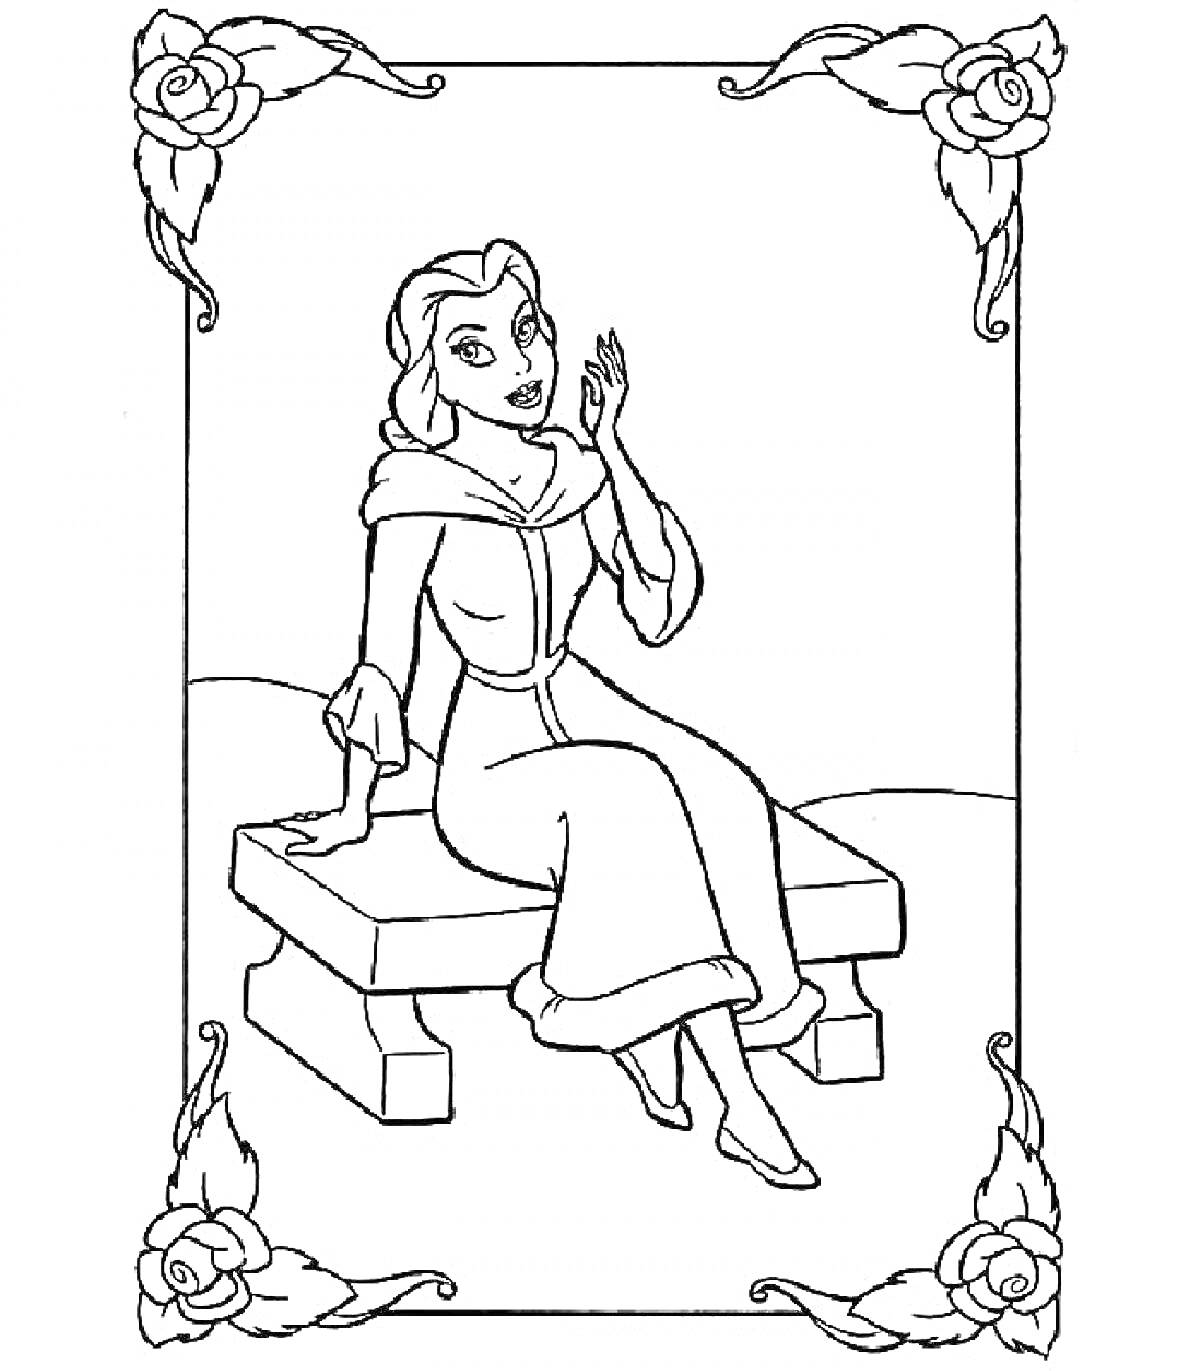 Принцесса Бель сидит на скамейке в цветочной рамке